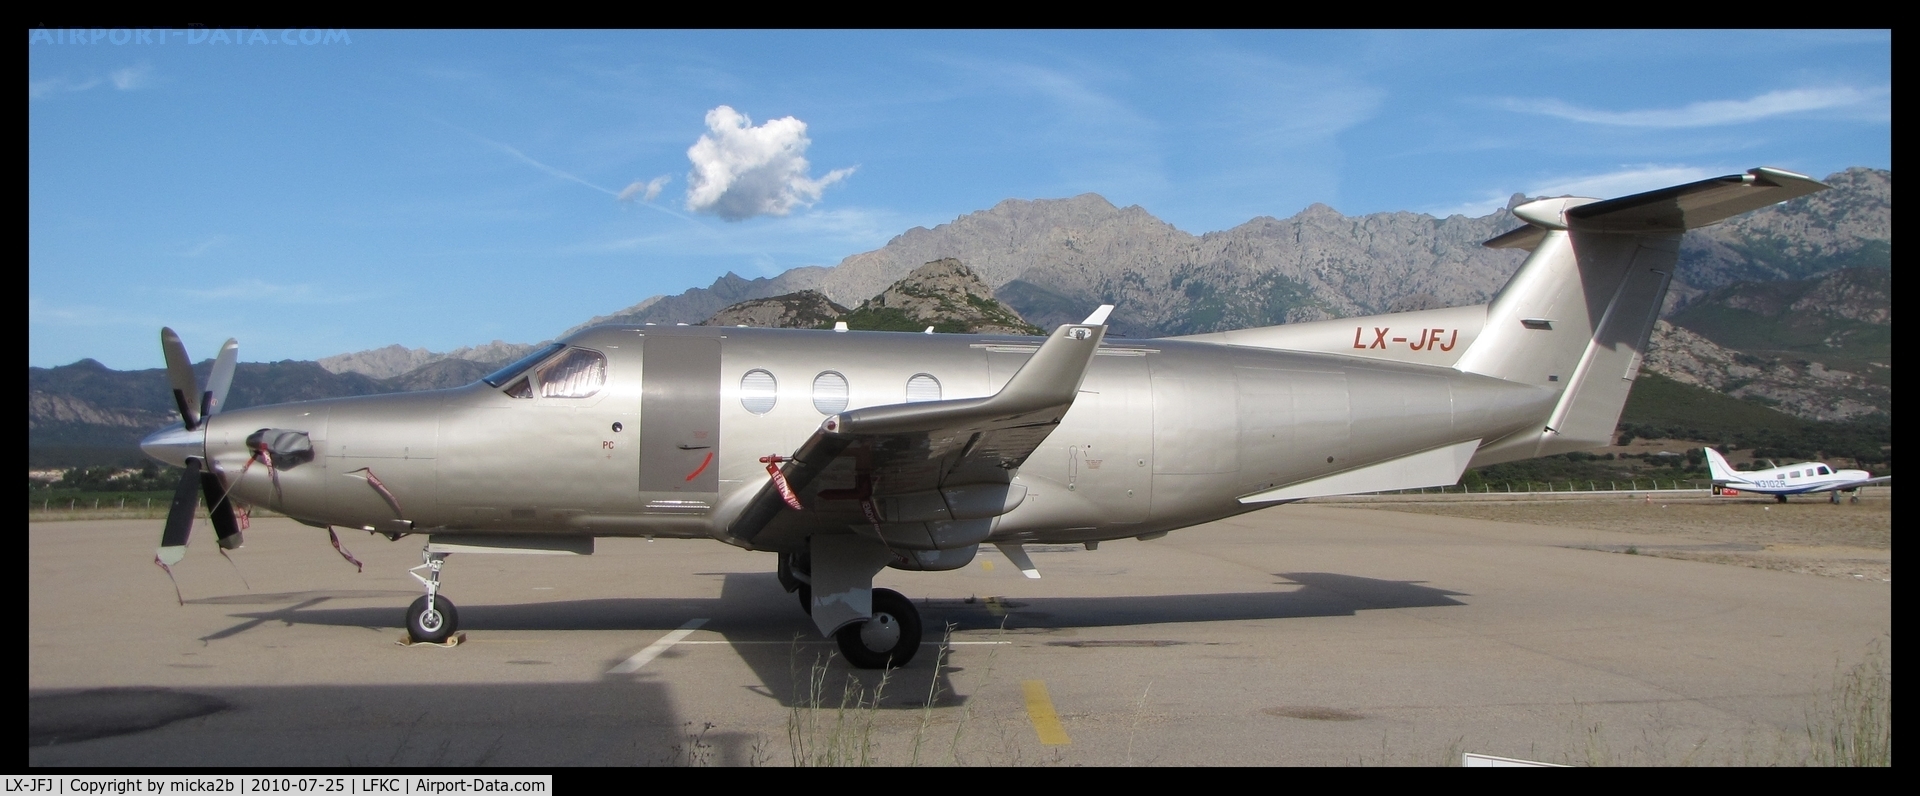 LX-JFJ, 2005 Pilatus PC-12/45 C/N 678, Parked.